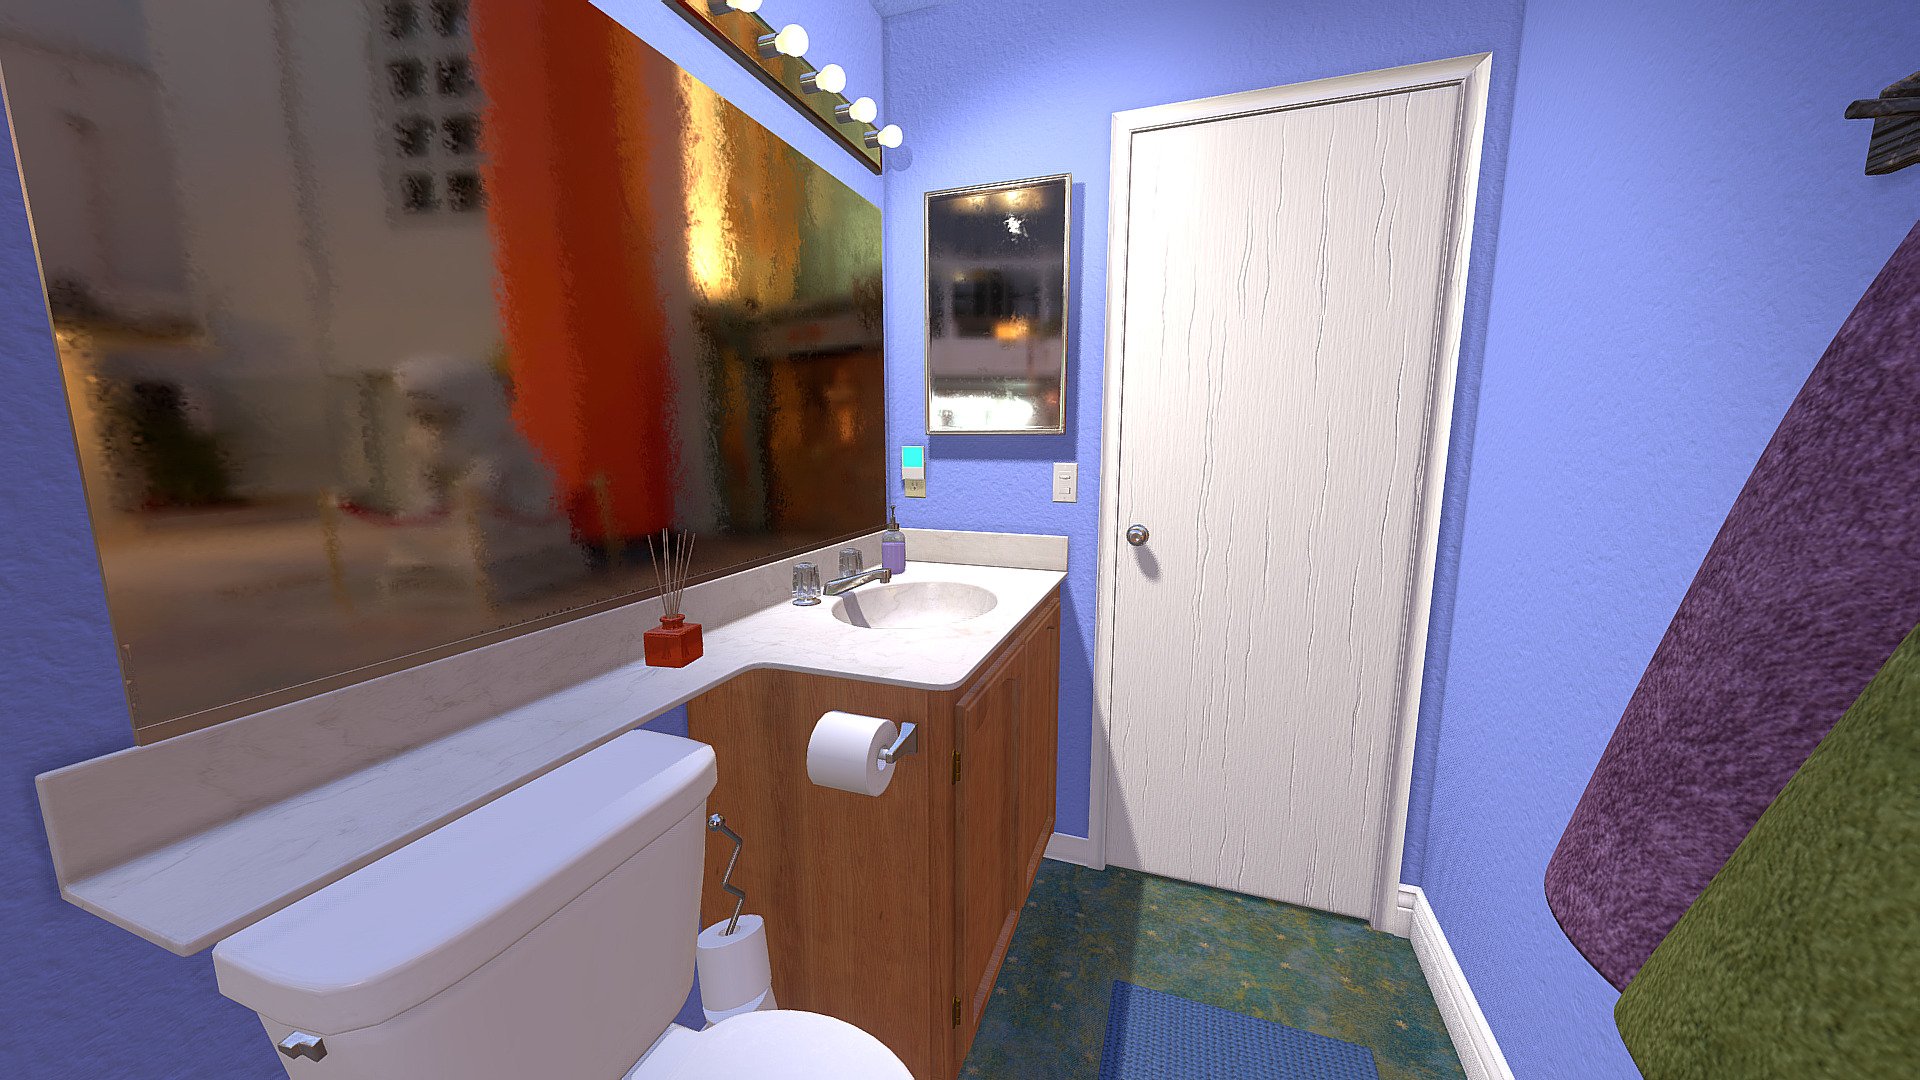 Bathroom - 3D model by HH3D 3d model